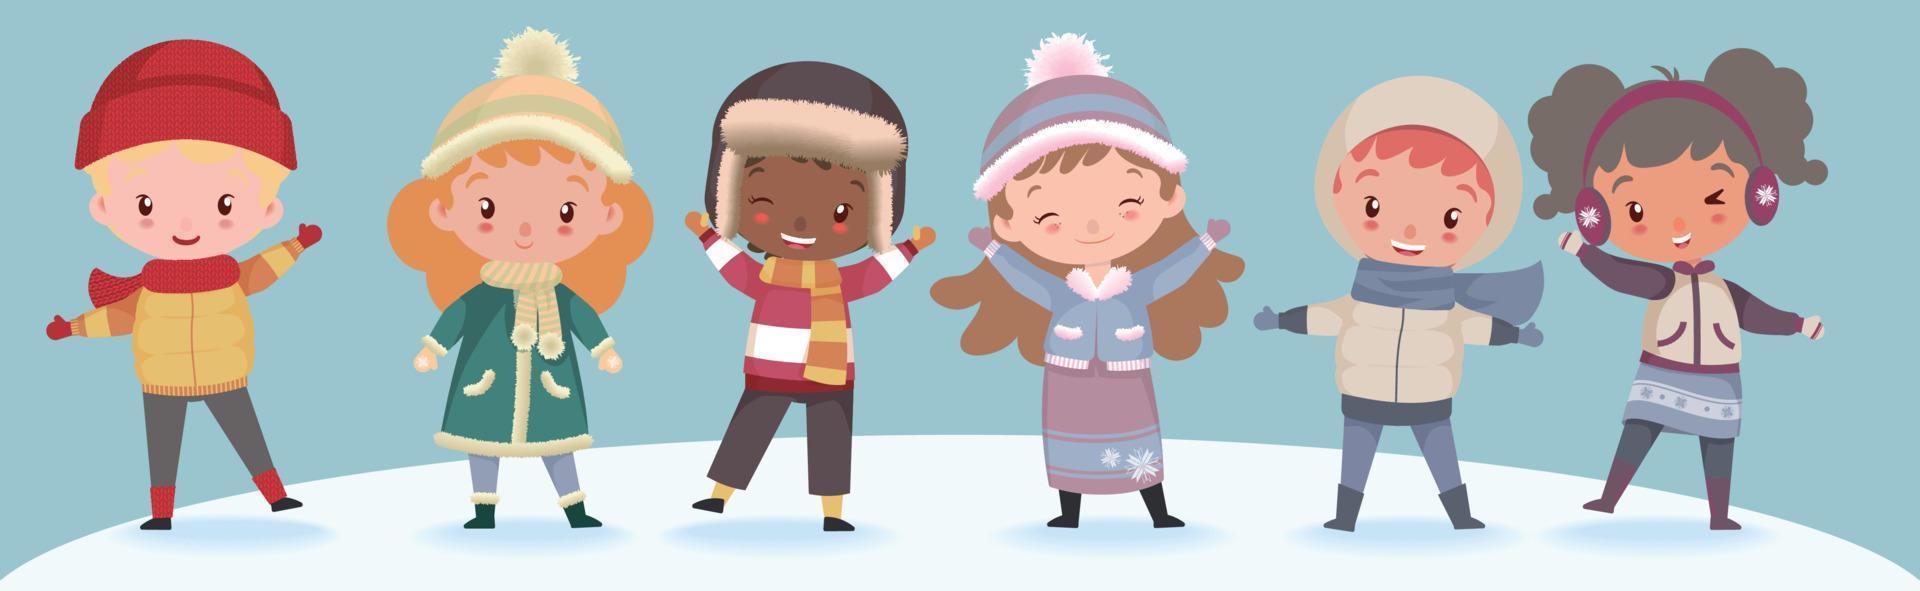 niños lindos con ropa cálida de invierno vector